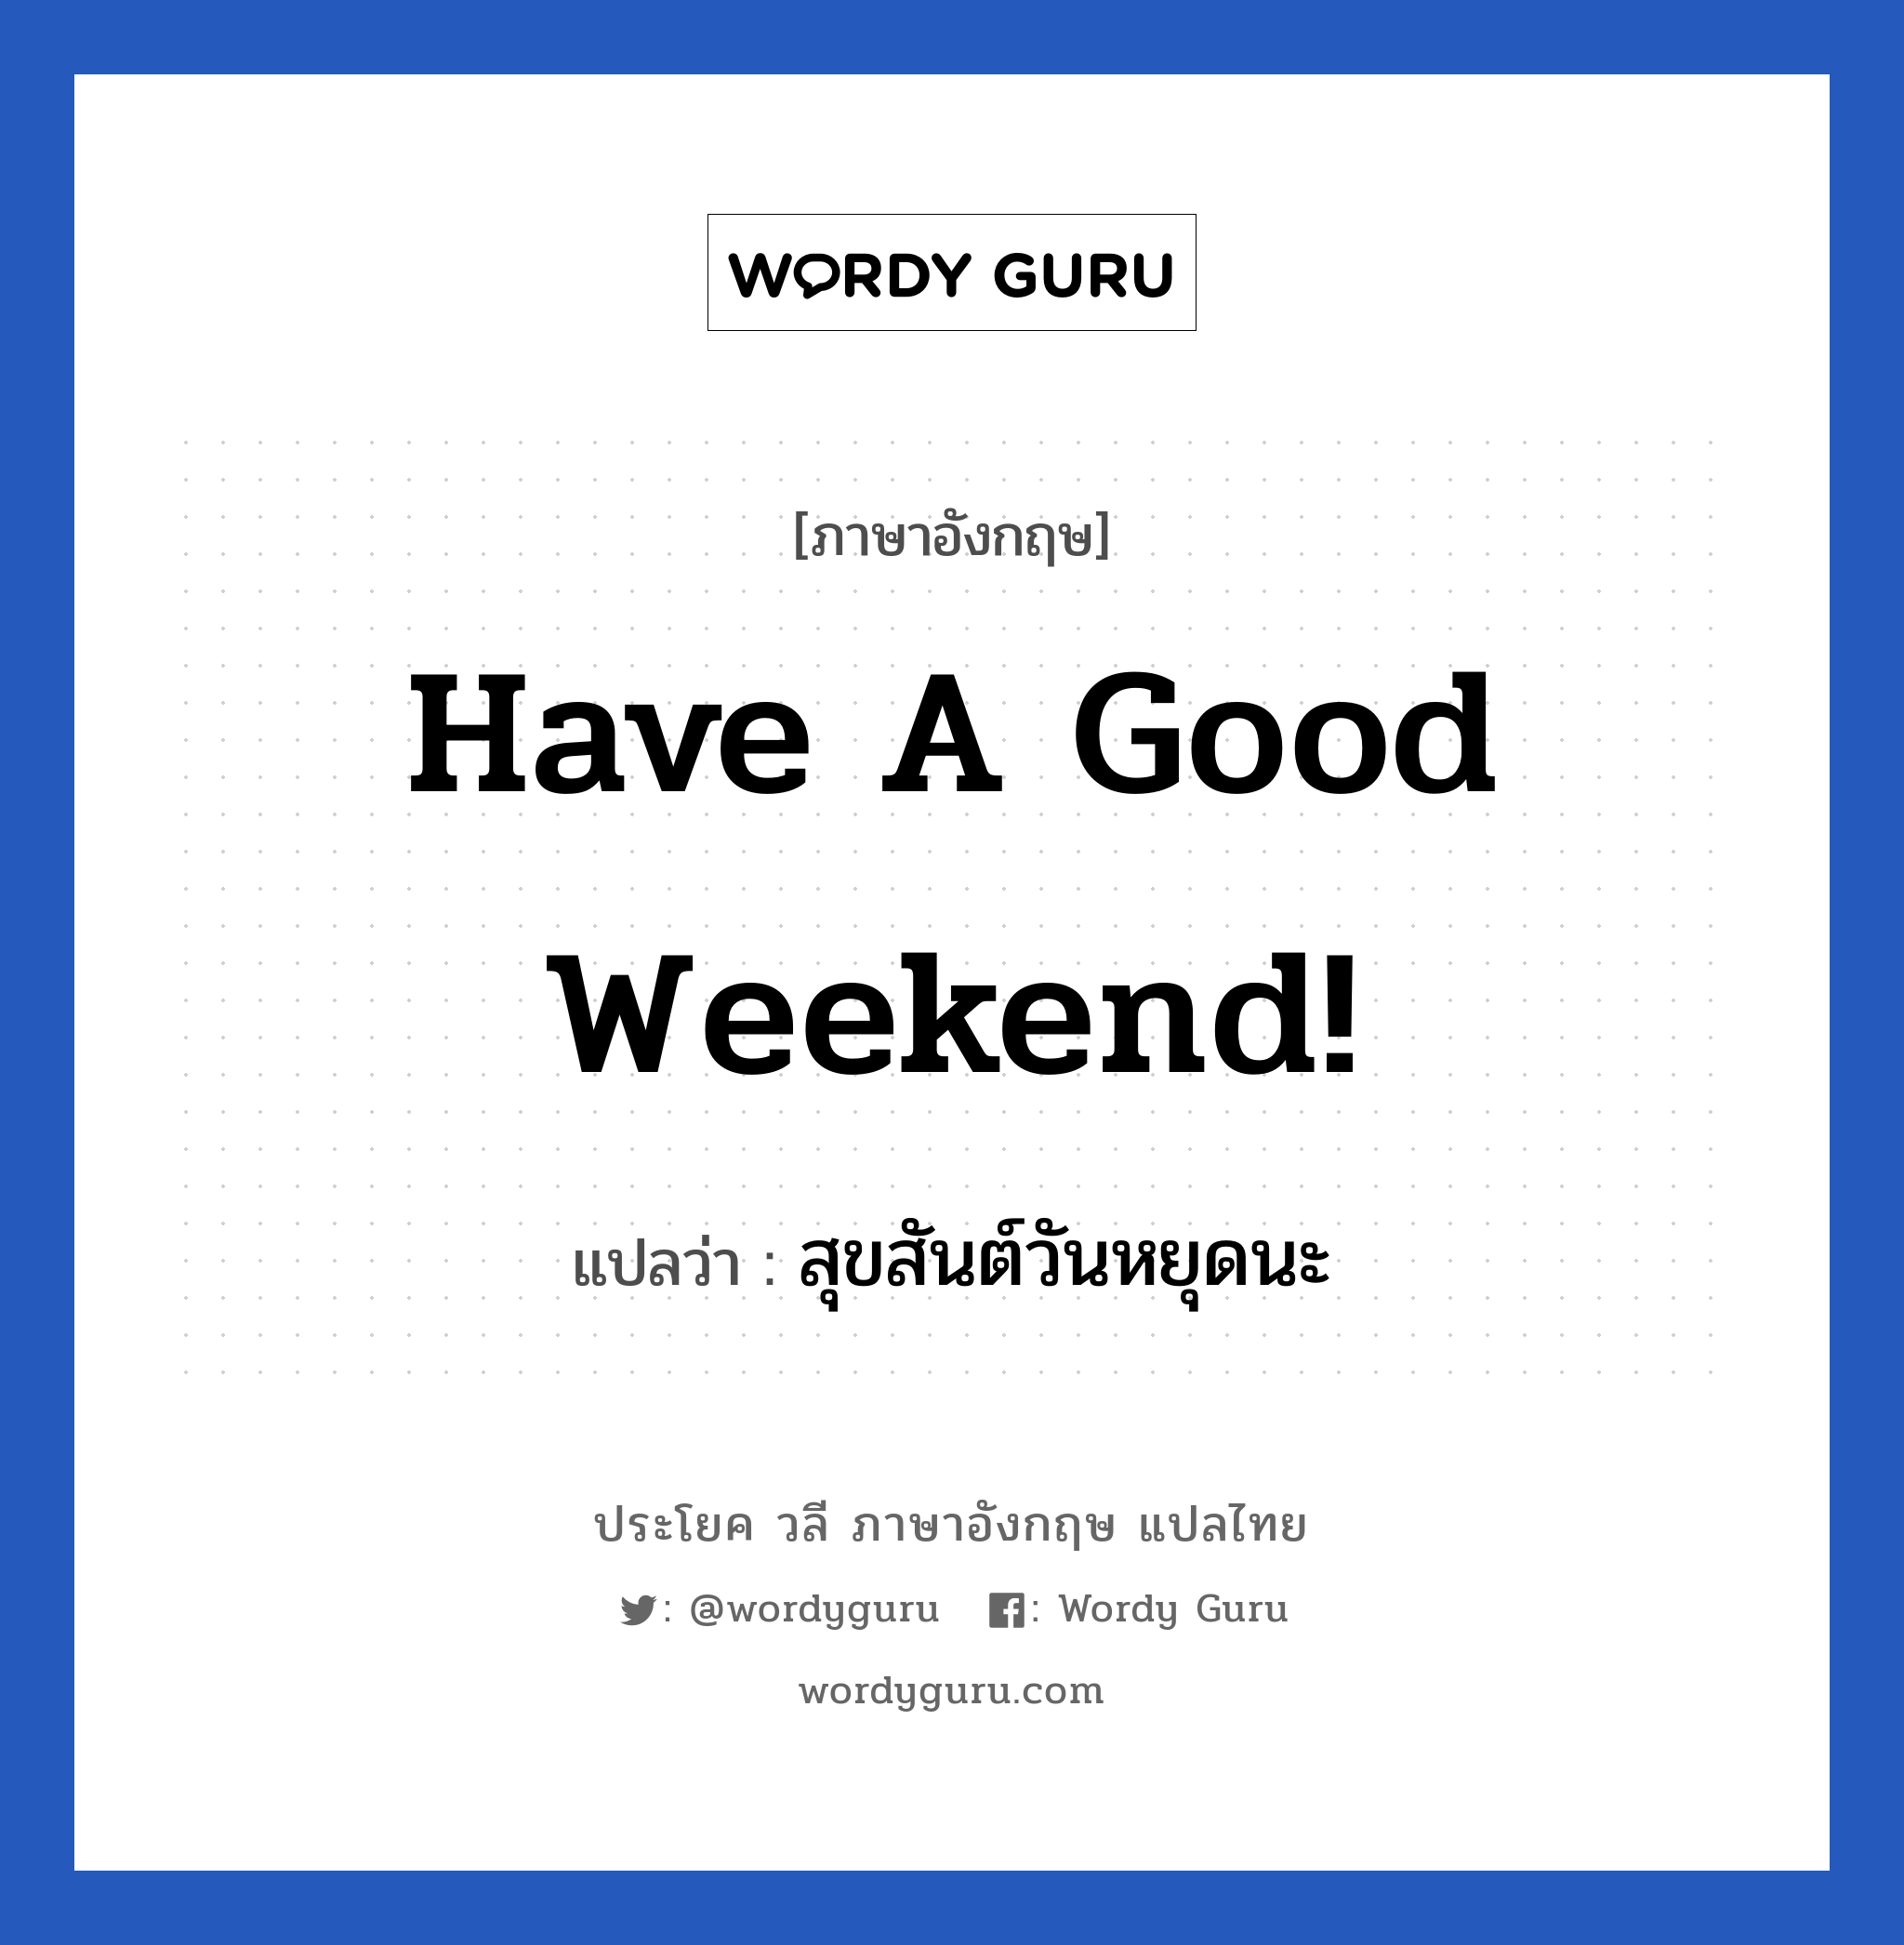 สุขสันต์วันหยุดนะ ภาษาอังกฤษ?, วลีภาษาอังกฤษ สุขสันต์วันหยุดนะ แปลว่า Have a good weekend!